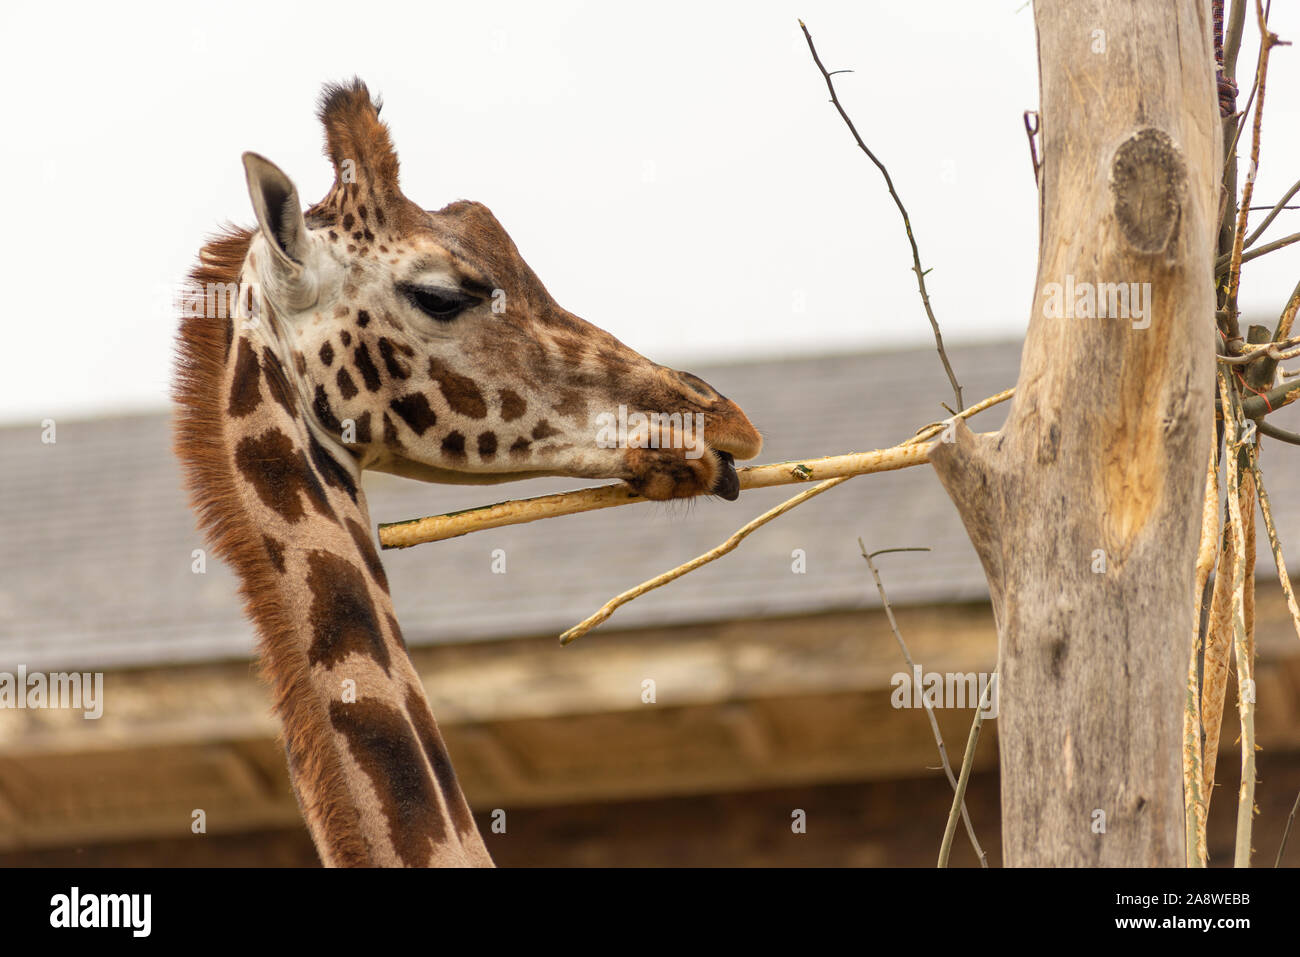 Giraffe feeding at London Zoo Stock Photo